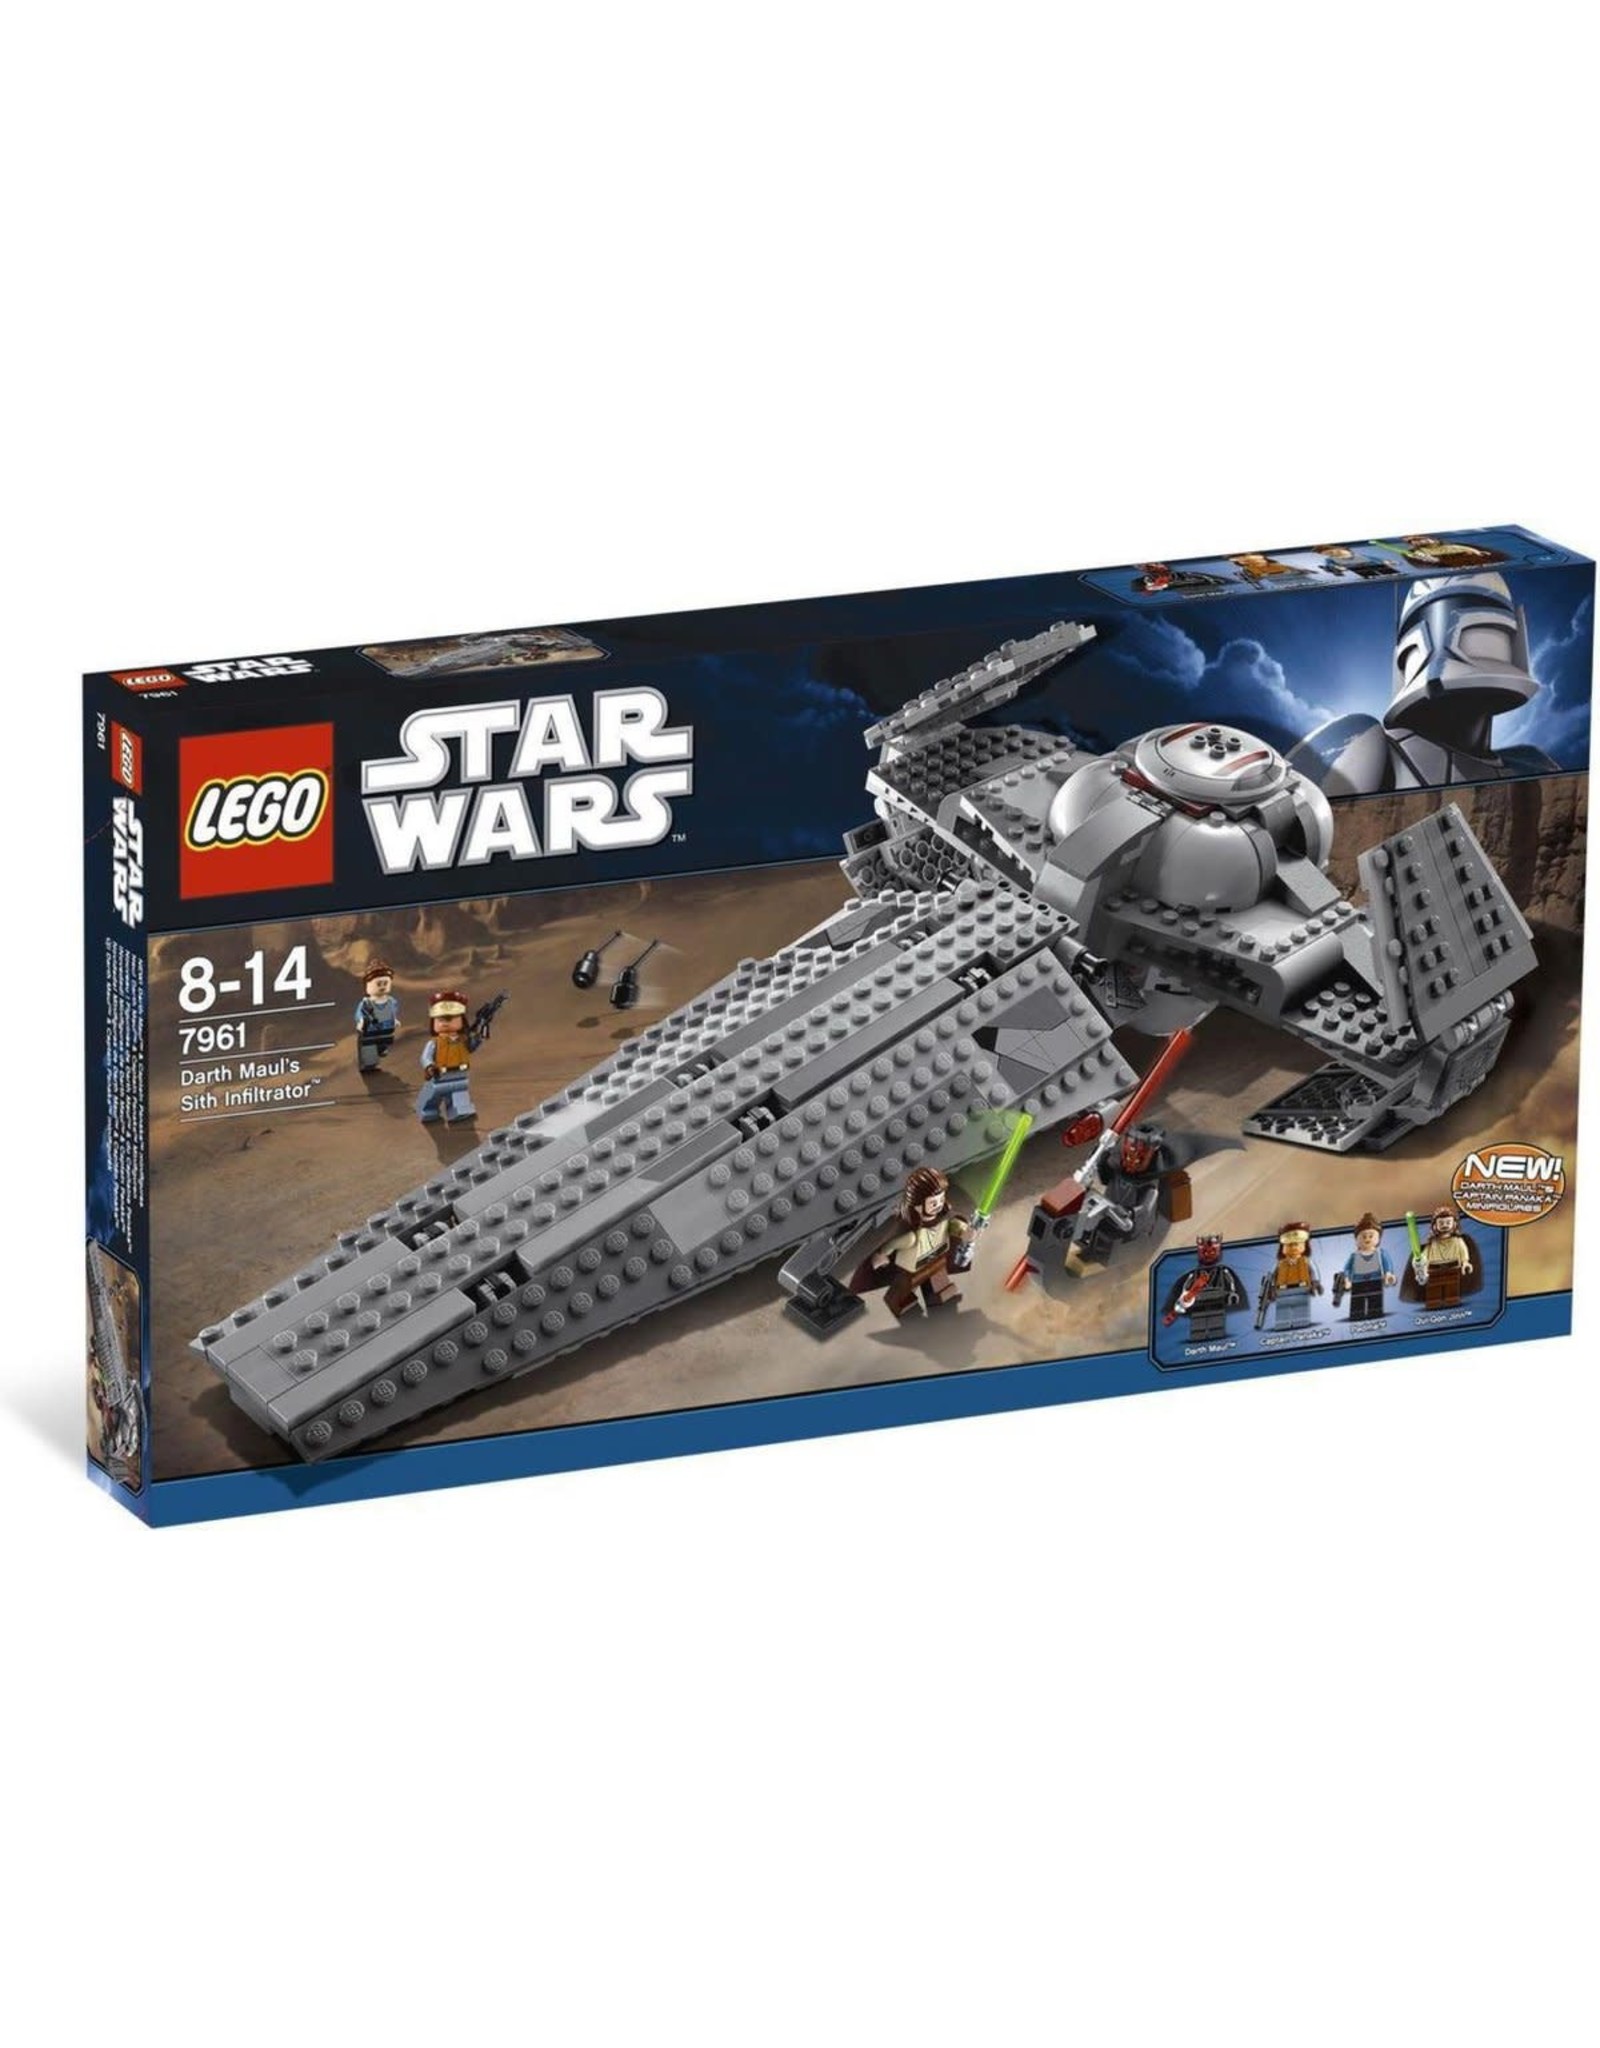 LEGO Lego Star Wars 7961 Darth Maul's Sith Infiltrator